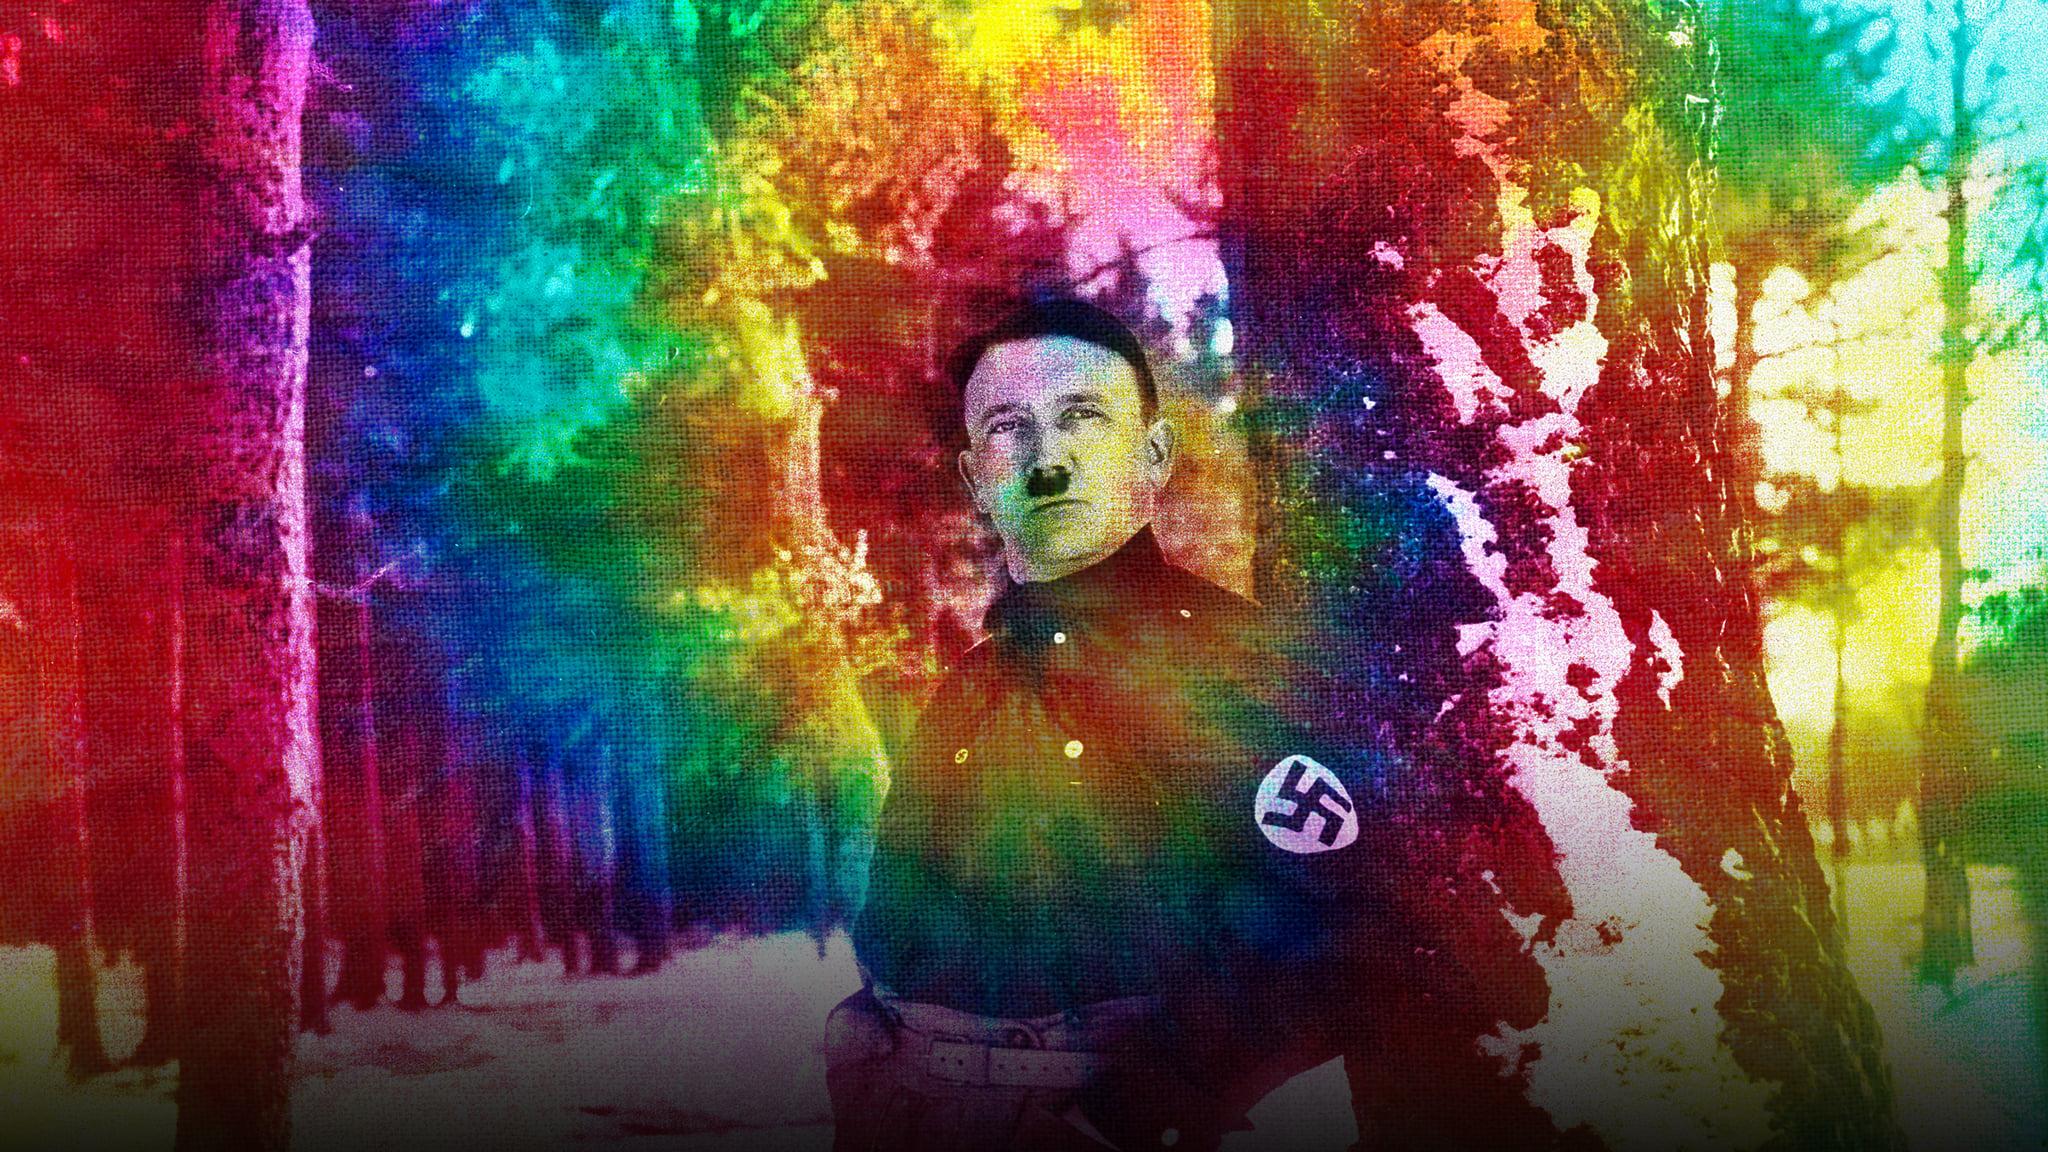 Hitler The Junkie backdrop